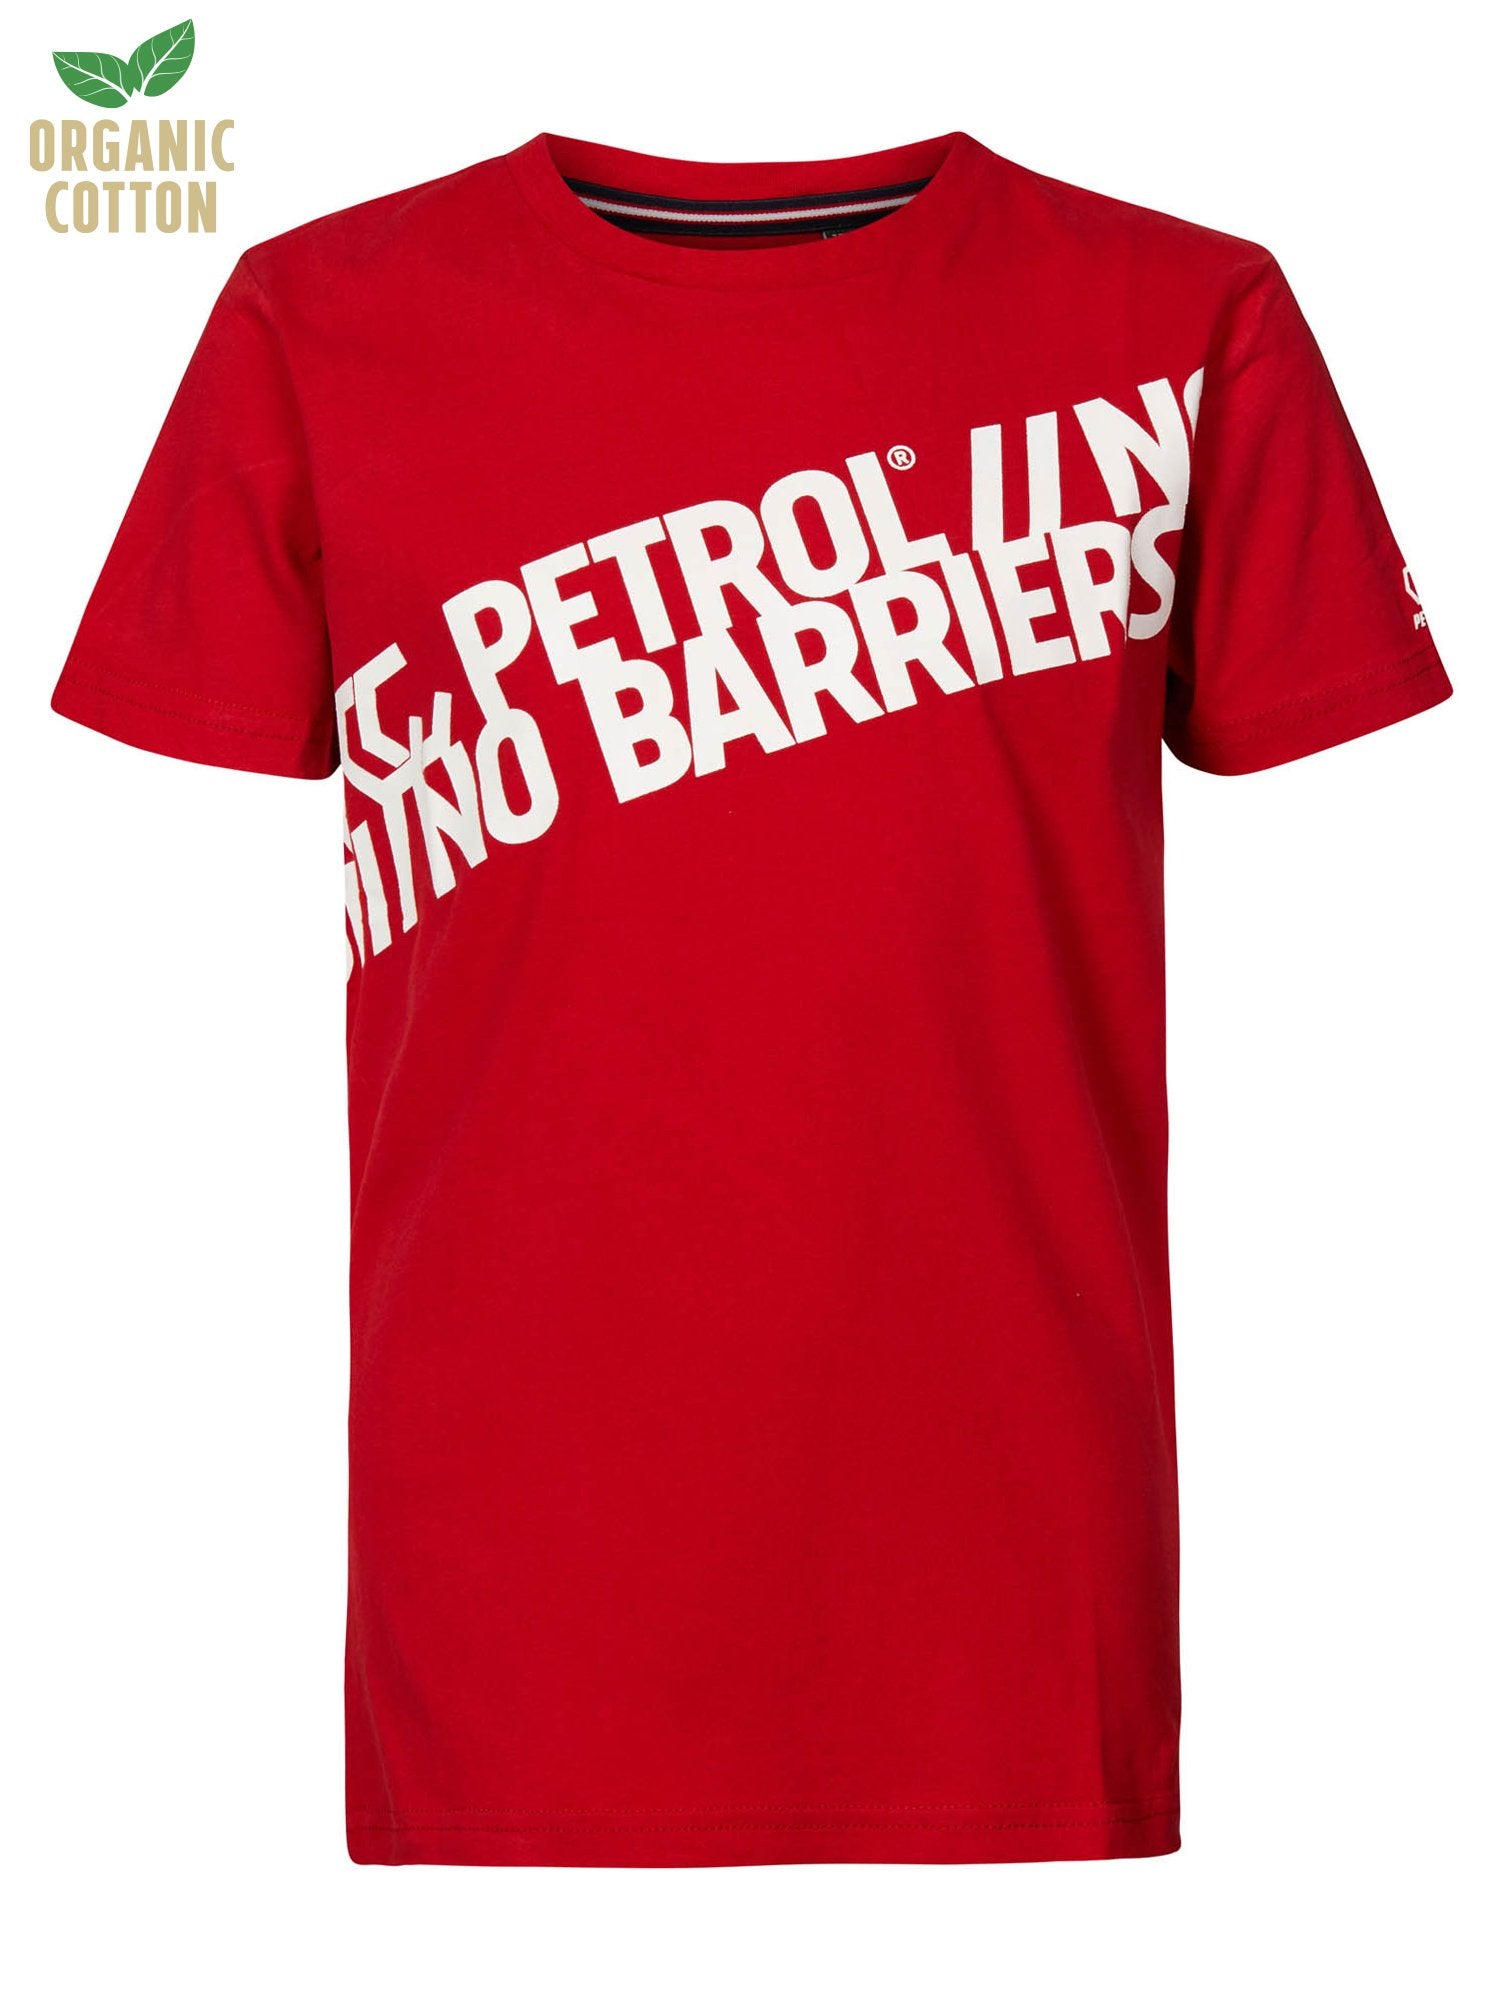 Jongens T-shirt No Barriers van Petrol in de kleur Urban Red in maat 164.